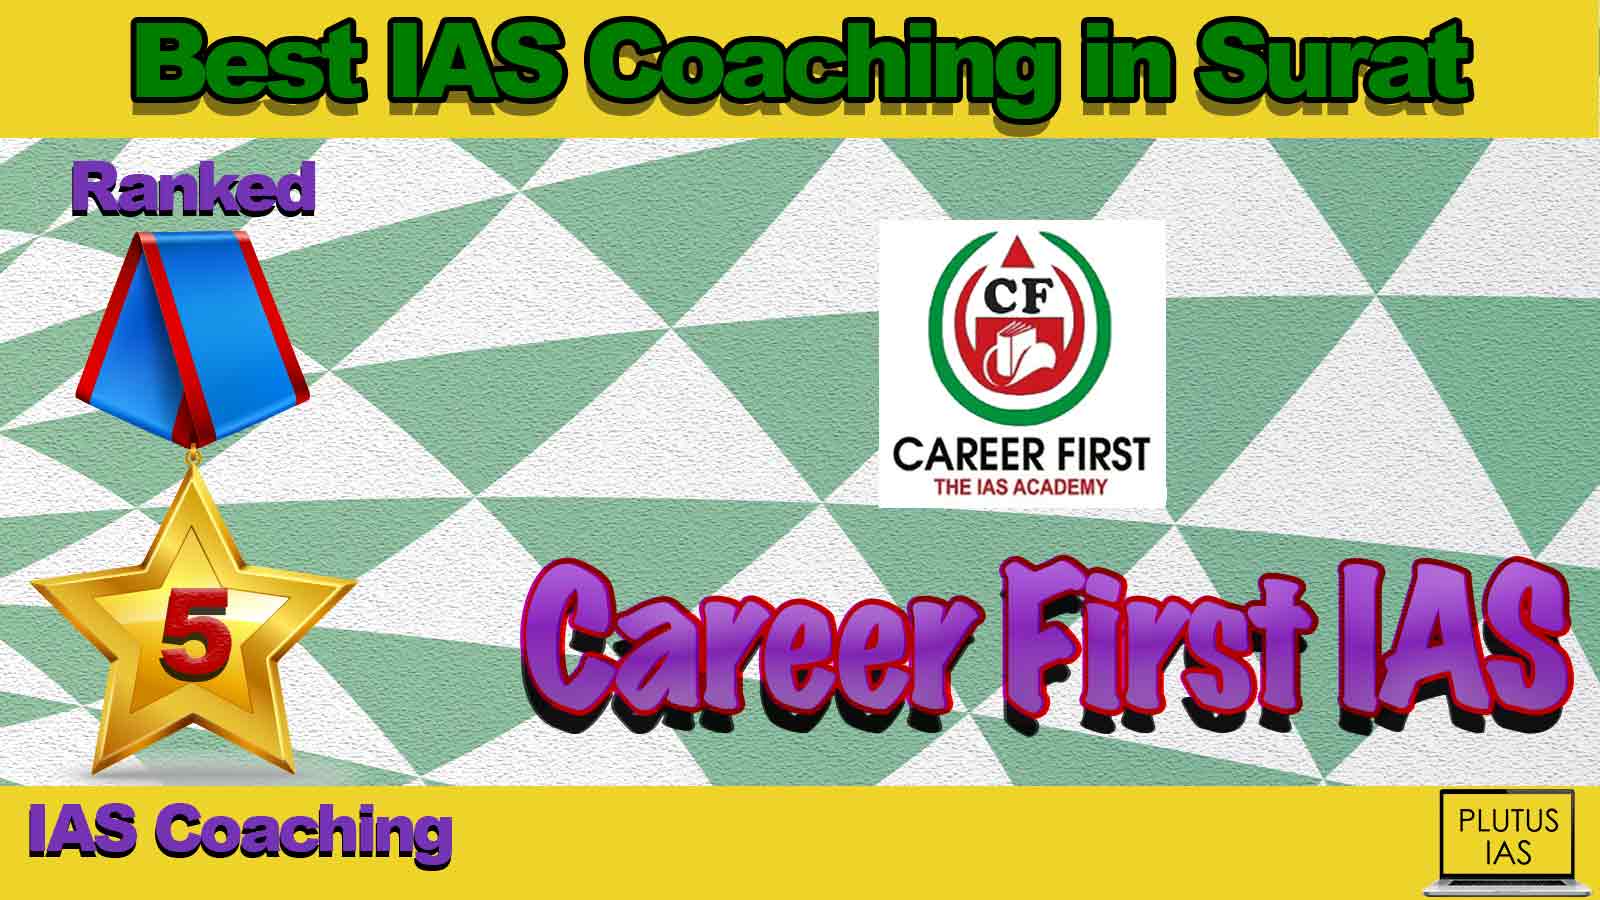 Top IAS Coaching in Surat